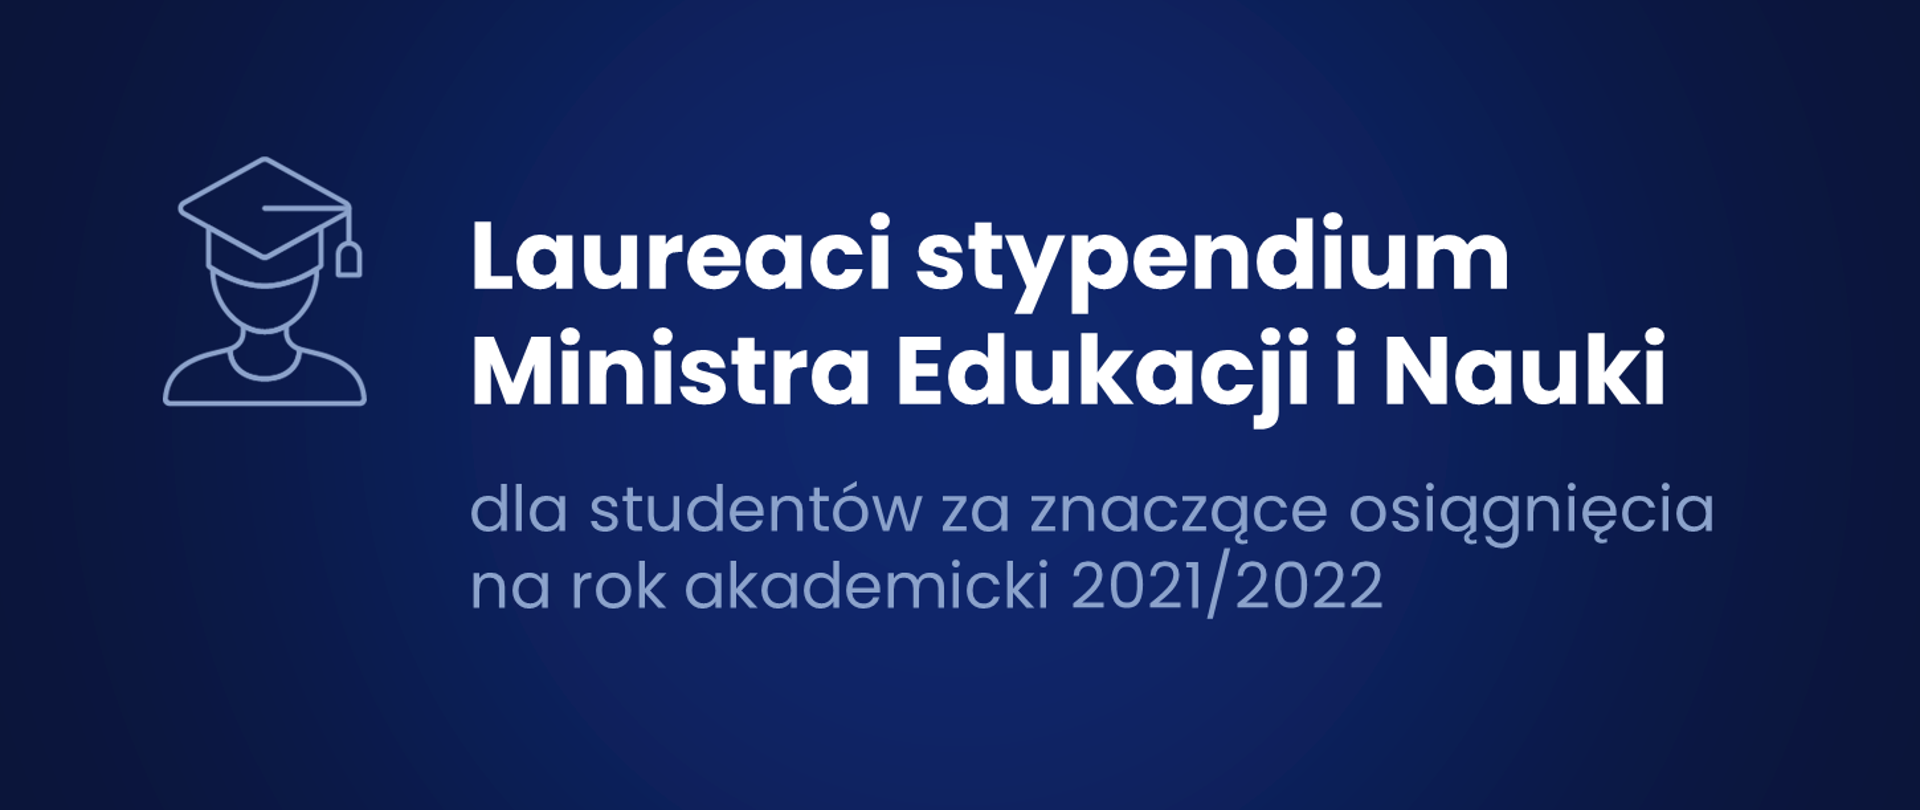 Grafika na granatowym tle z napisem Laureaci stypendium Ministra Edukacji i Nauki dla studentów za znaczące osiągnięcia na rok akademicki 2021/2022.